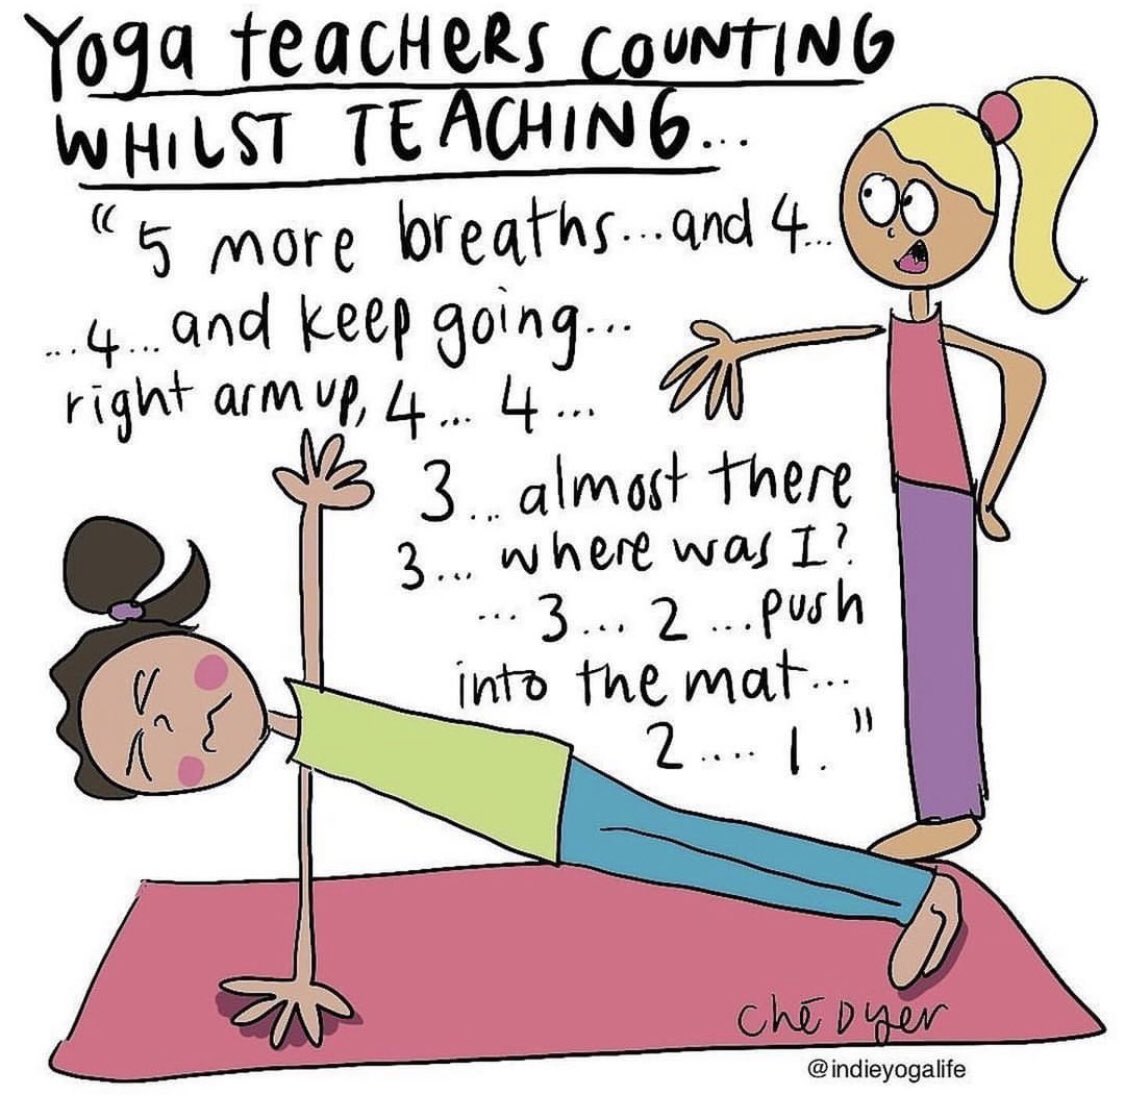 Who relates ?? 😜 #yogamemes #yoga #meme #yogameme #memes #yogaeverydamnday #yogalife #yogapractice #funnymemes #memesdaily #yogainspiration #funnyyoga #yogateacher #yogalove #memers #yogaeveryday #onlineyoga #onlinefitness #dietician #yogatrainer #fitnesscoach #mumbai #india